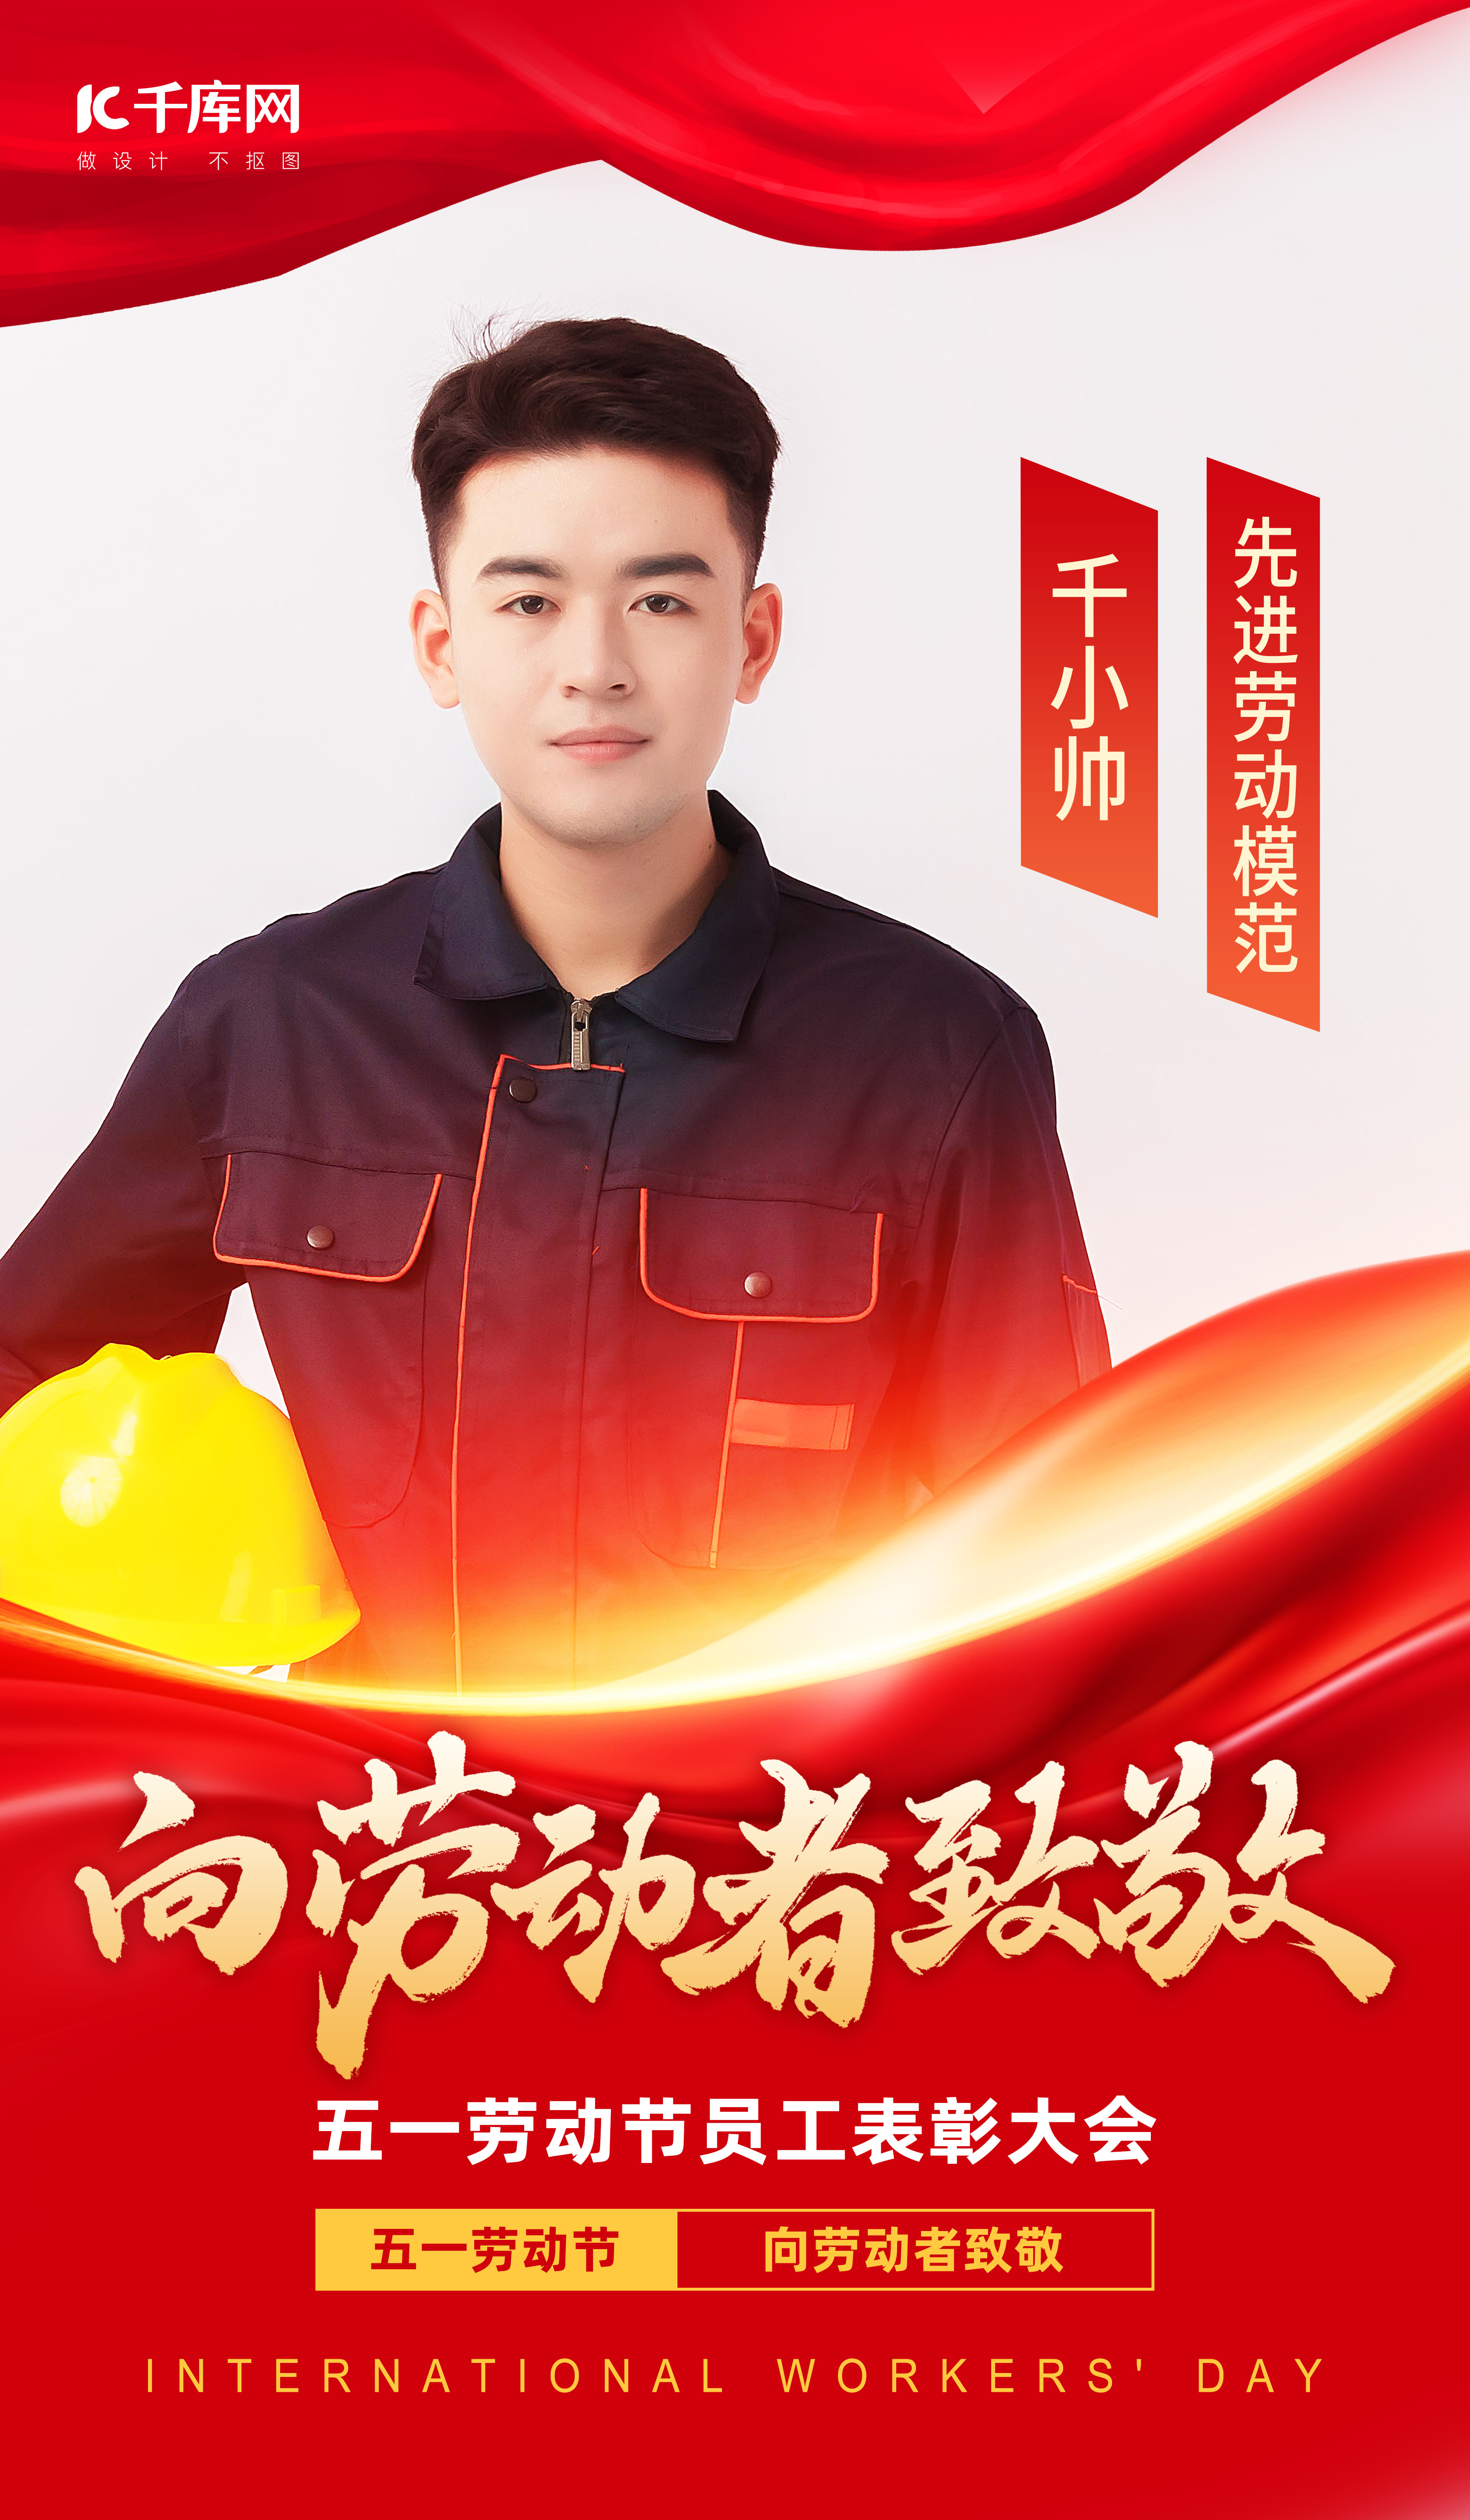 劳模表彰男模特红金色党政风海报宣传海报设计图片